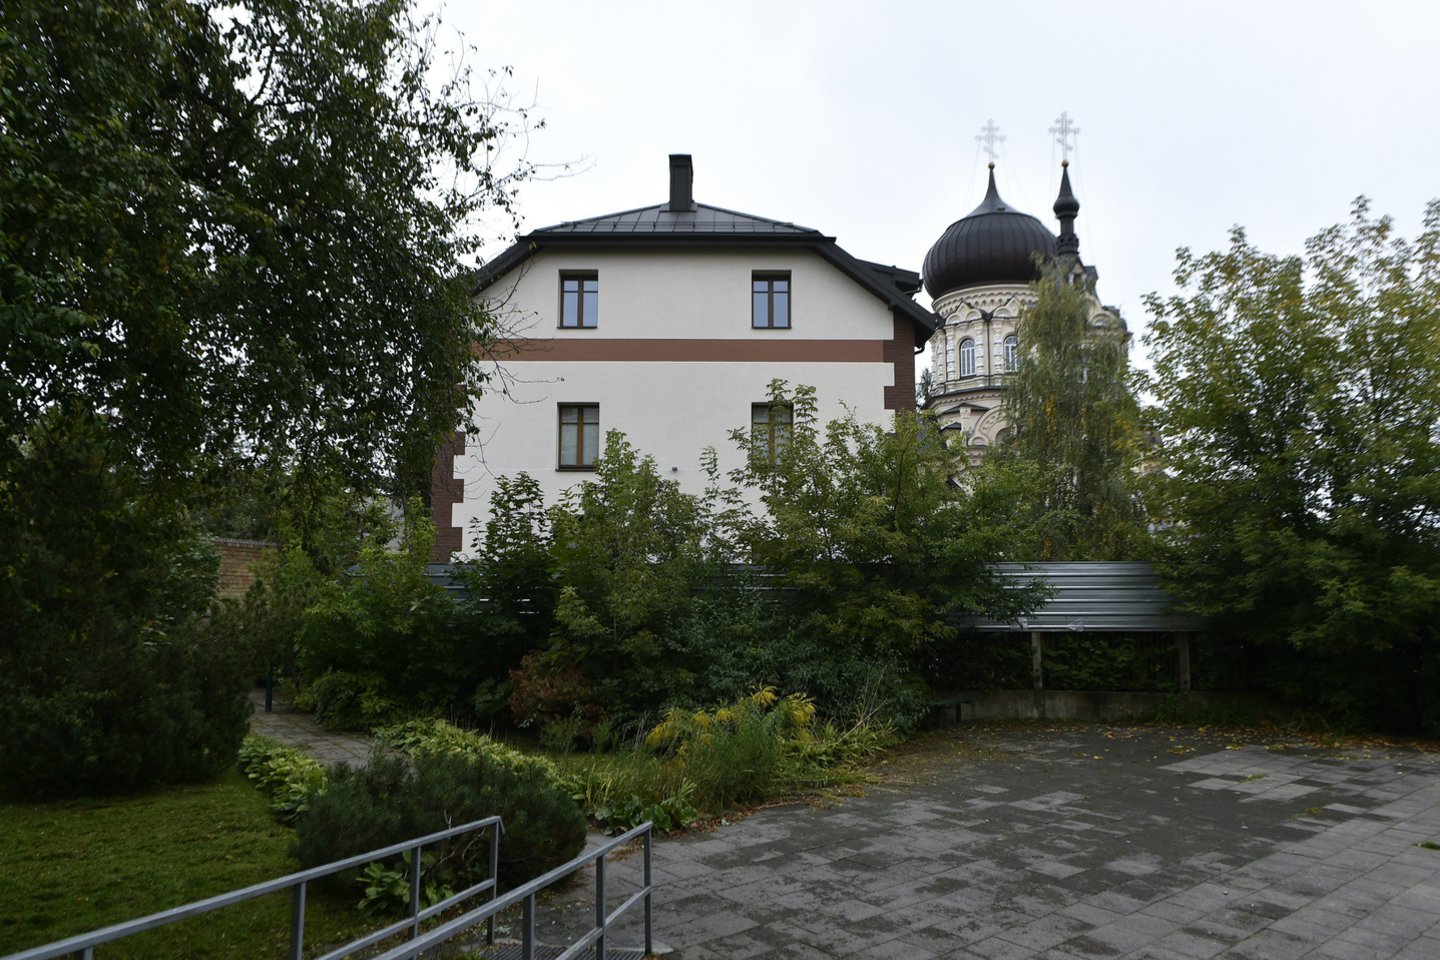  Nakvynės namai Vilniuje, kuriuose bus apgyvendinti migrantai.<br> V.Ščiavinsko nuotr.